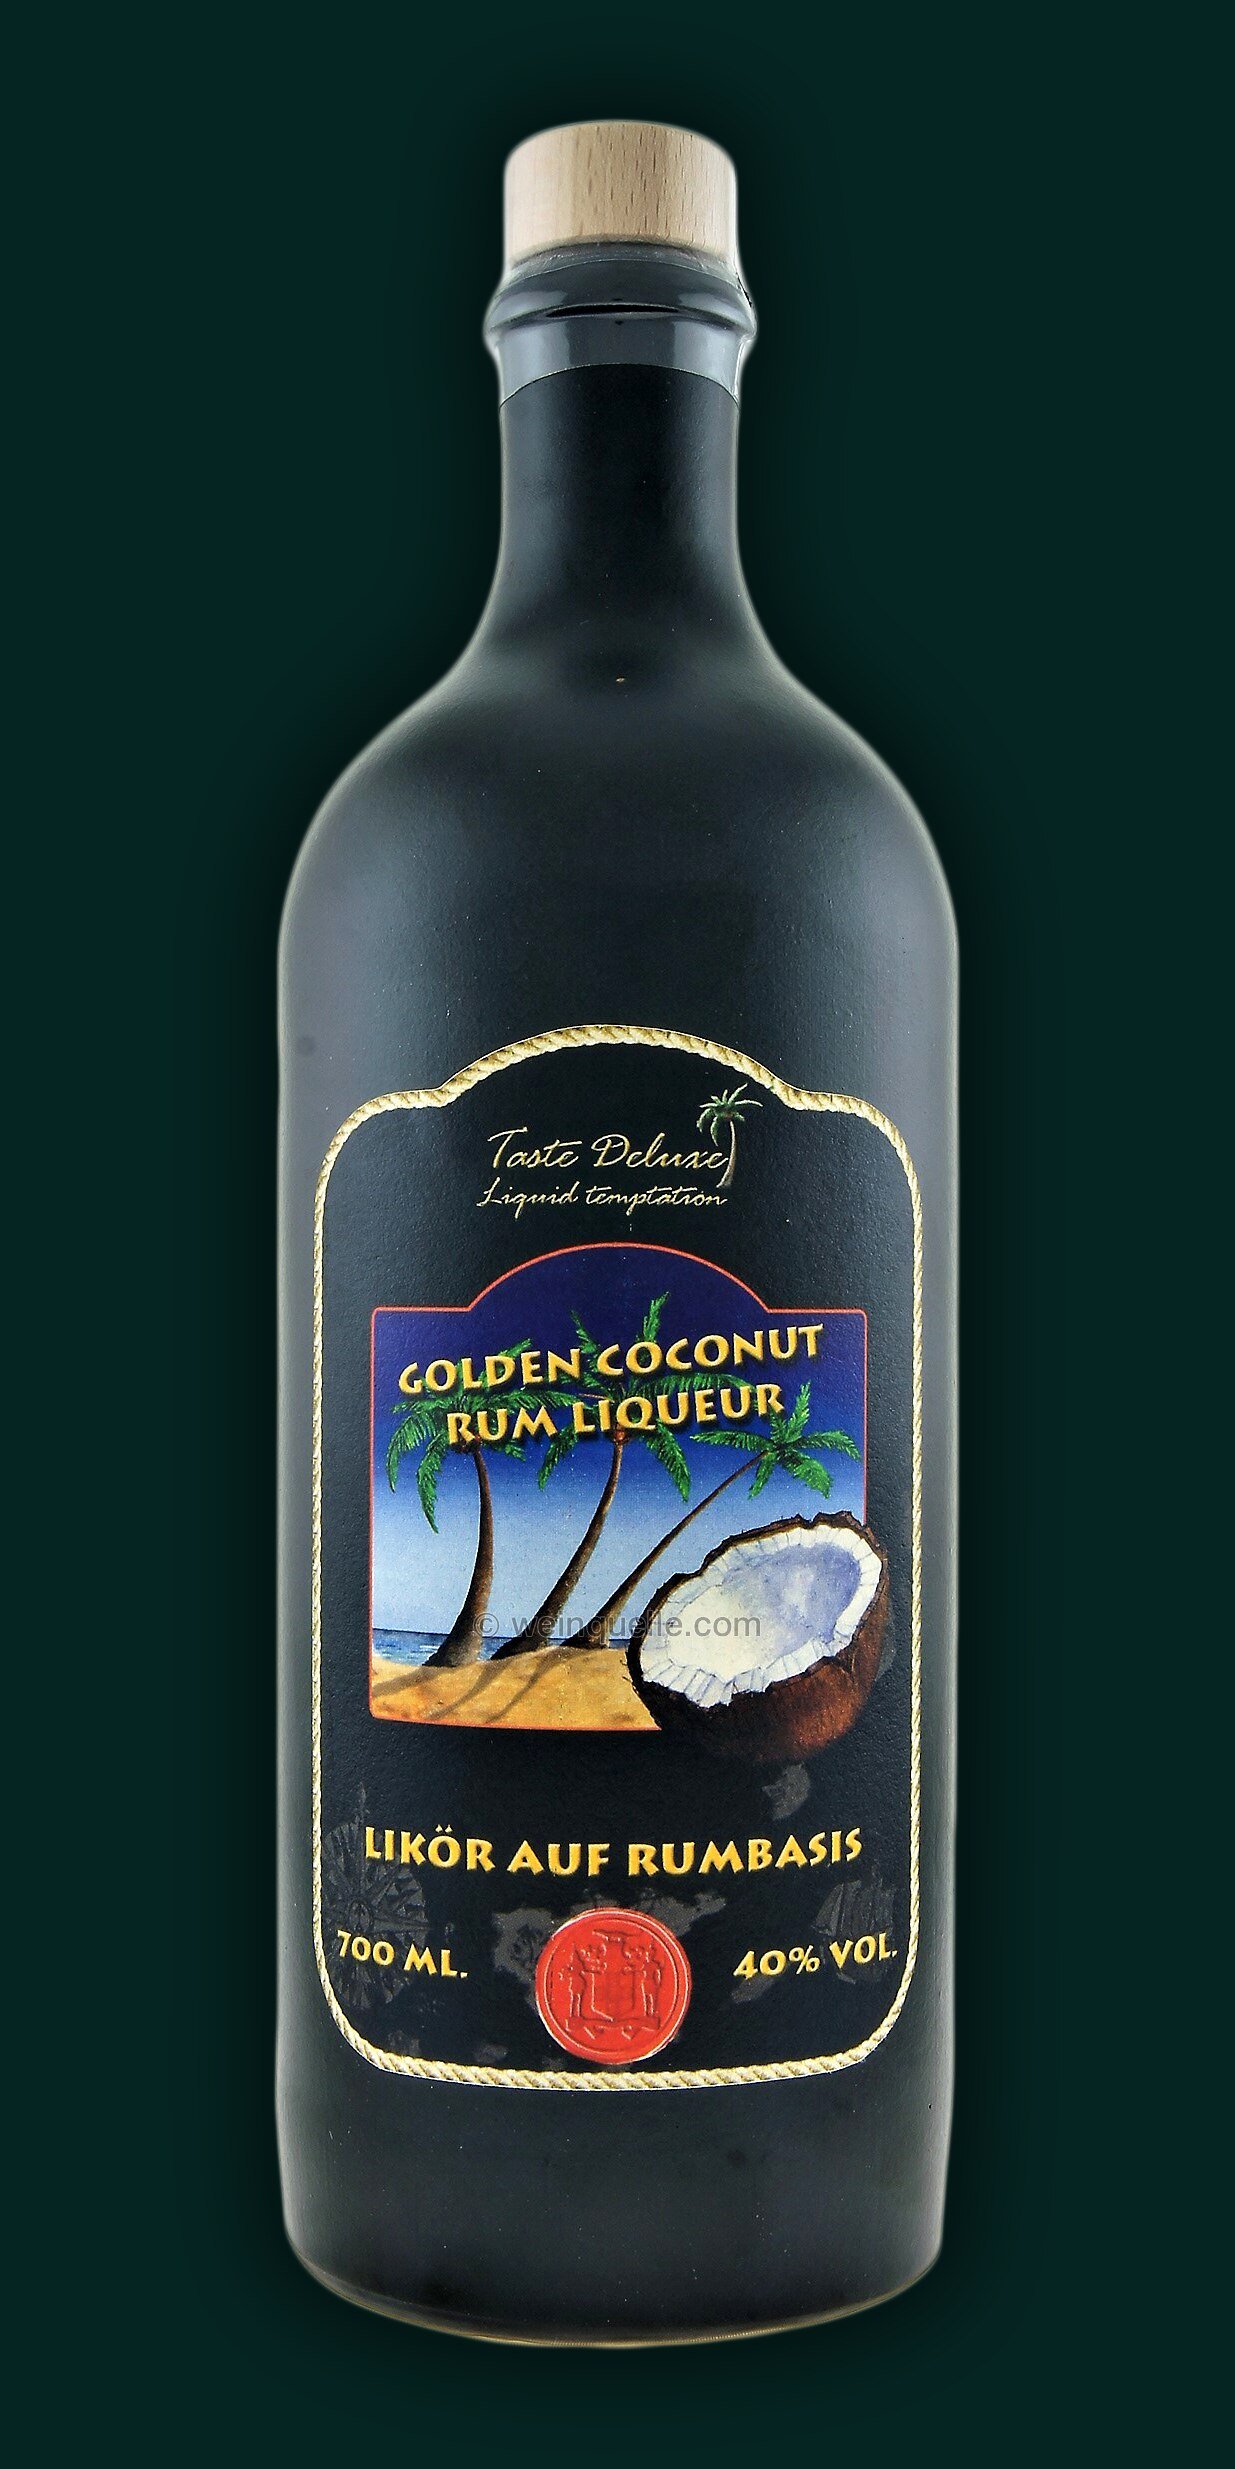 Golden Coconut Rum Liqueur Taste Deluxe Steingutflasche ...